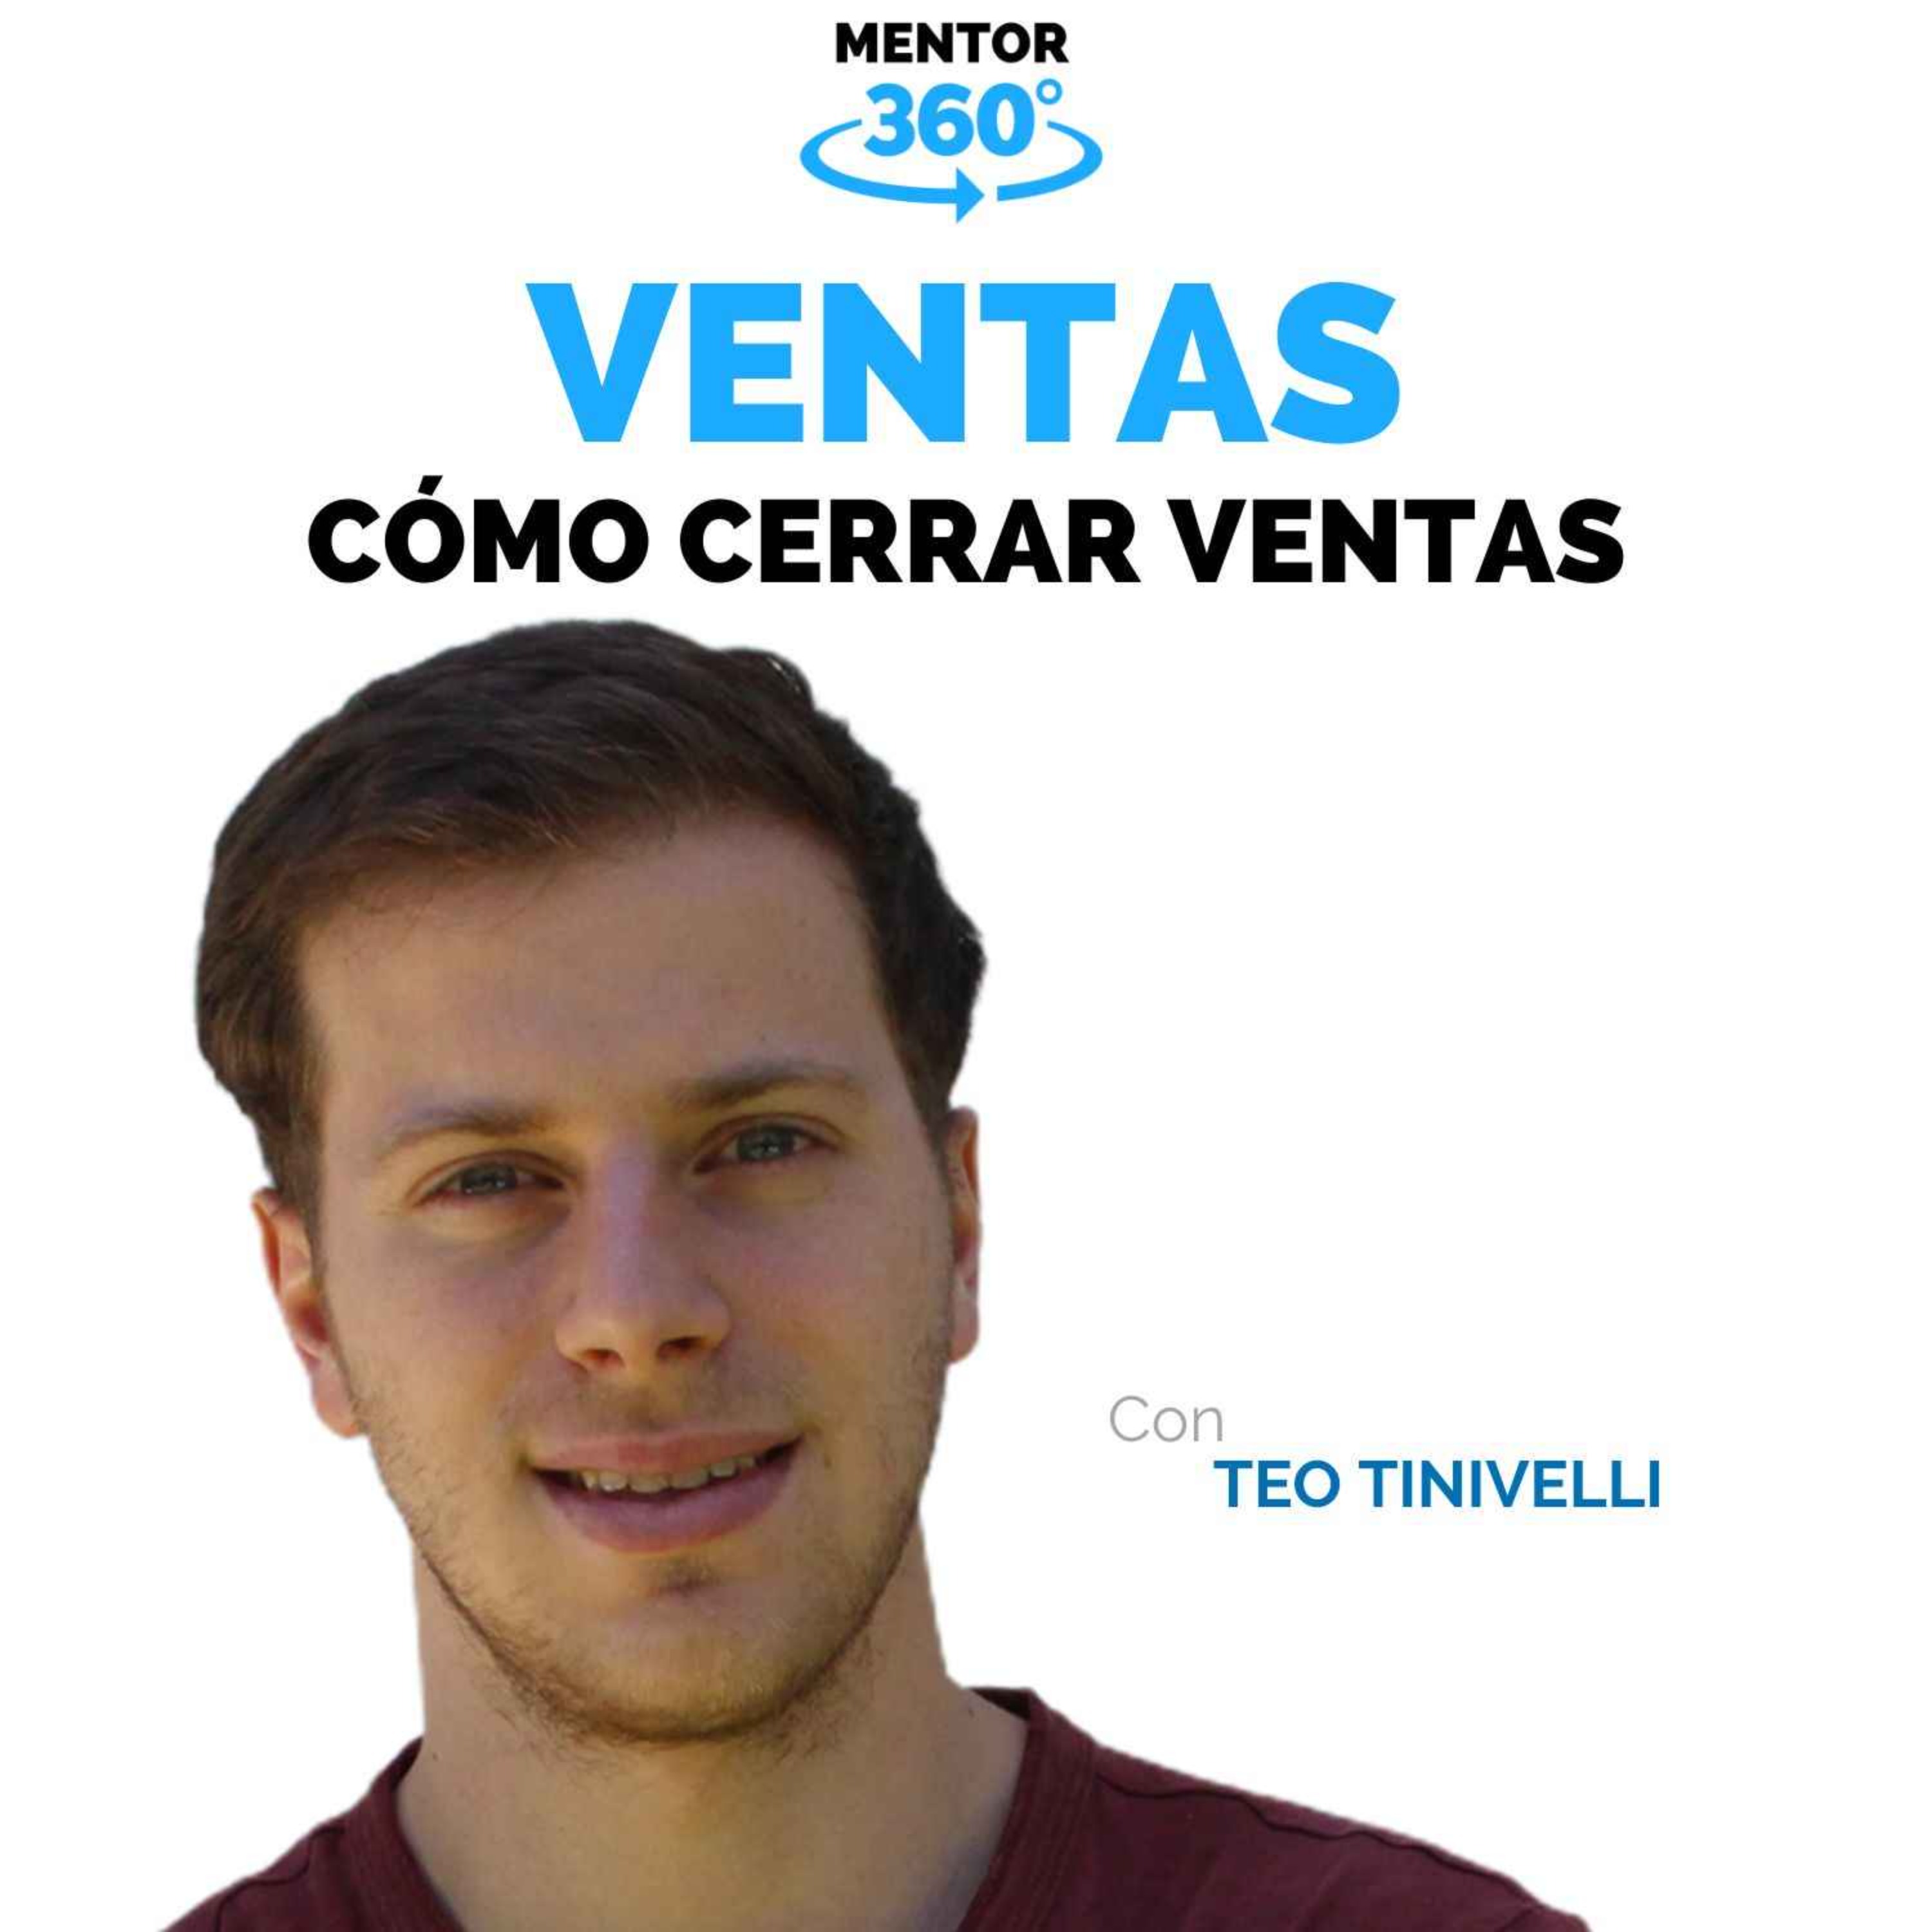 Cómo Cerrar Ventas - Teo Tinivelli - Ventas - MENTOR360